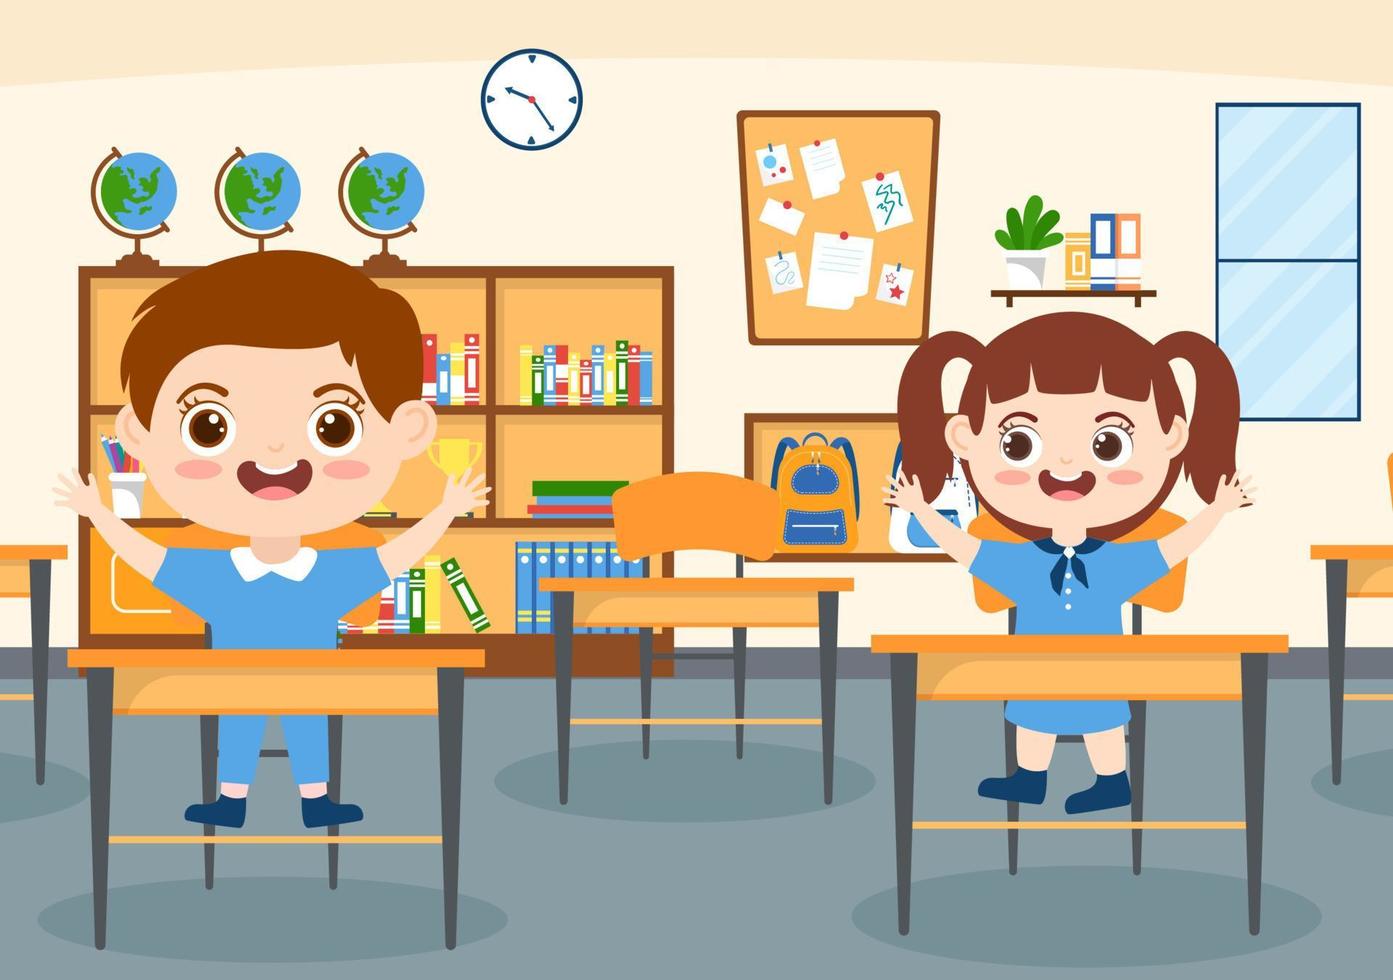 école primaire avec de mignons petits élèves qui étudient en classe dans un modèle d'illustration de dessin animé plat dessiné à la main vecteur